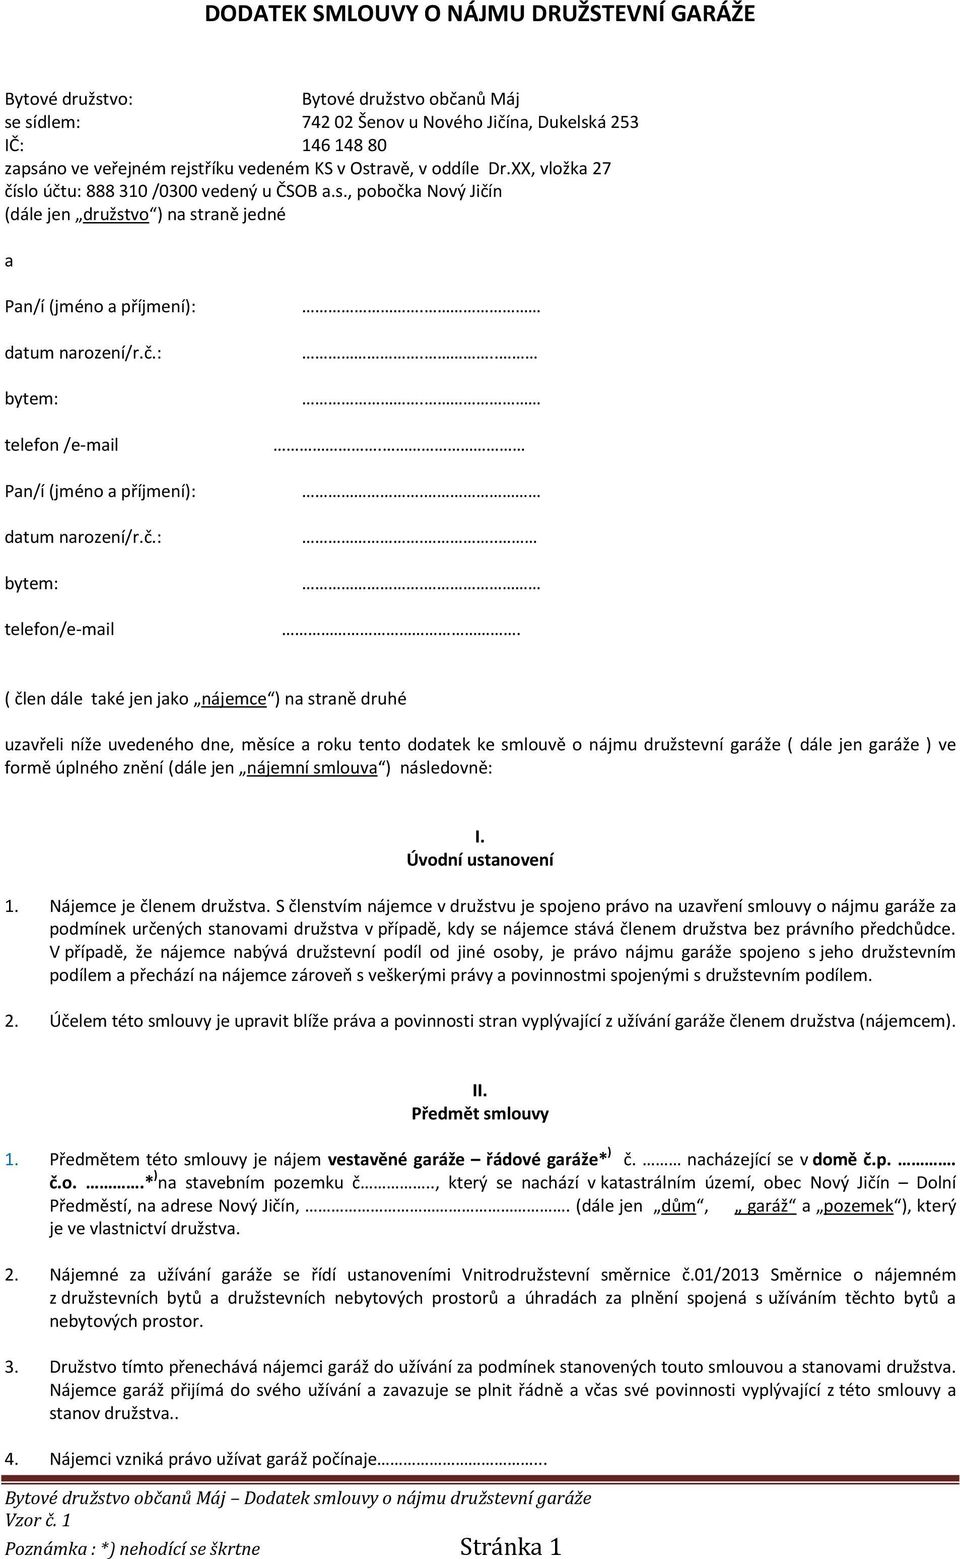 DODATEK SMLOUVY O NÁJMU DRUŽSTEVNÍ GARÁŽE - PDF Free Download